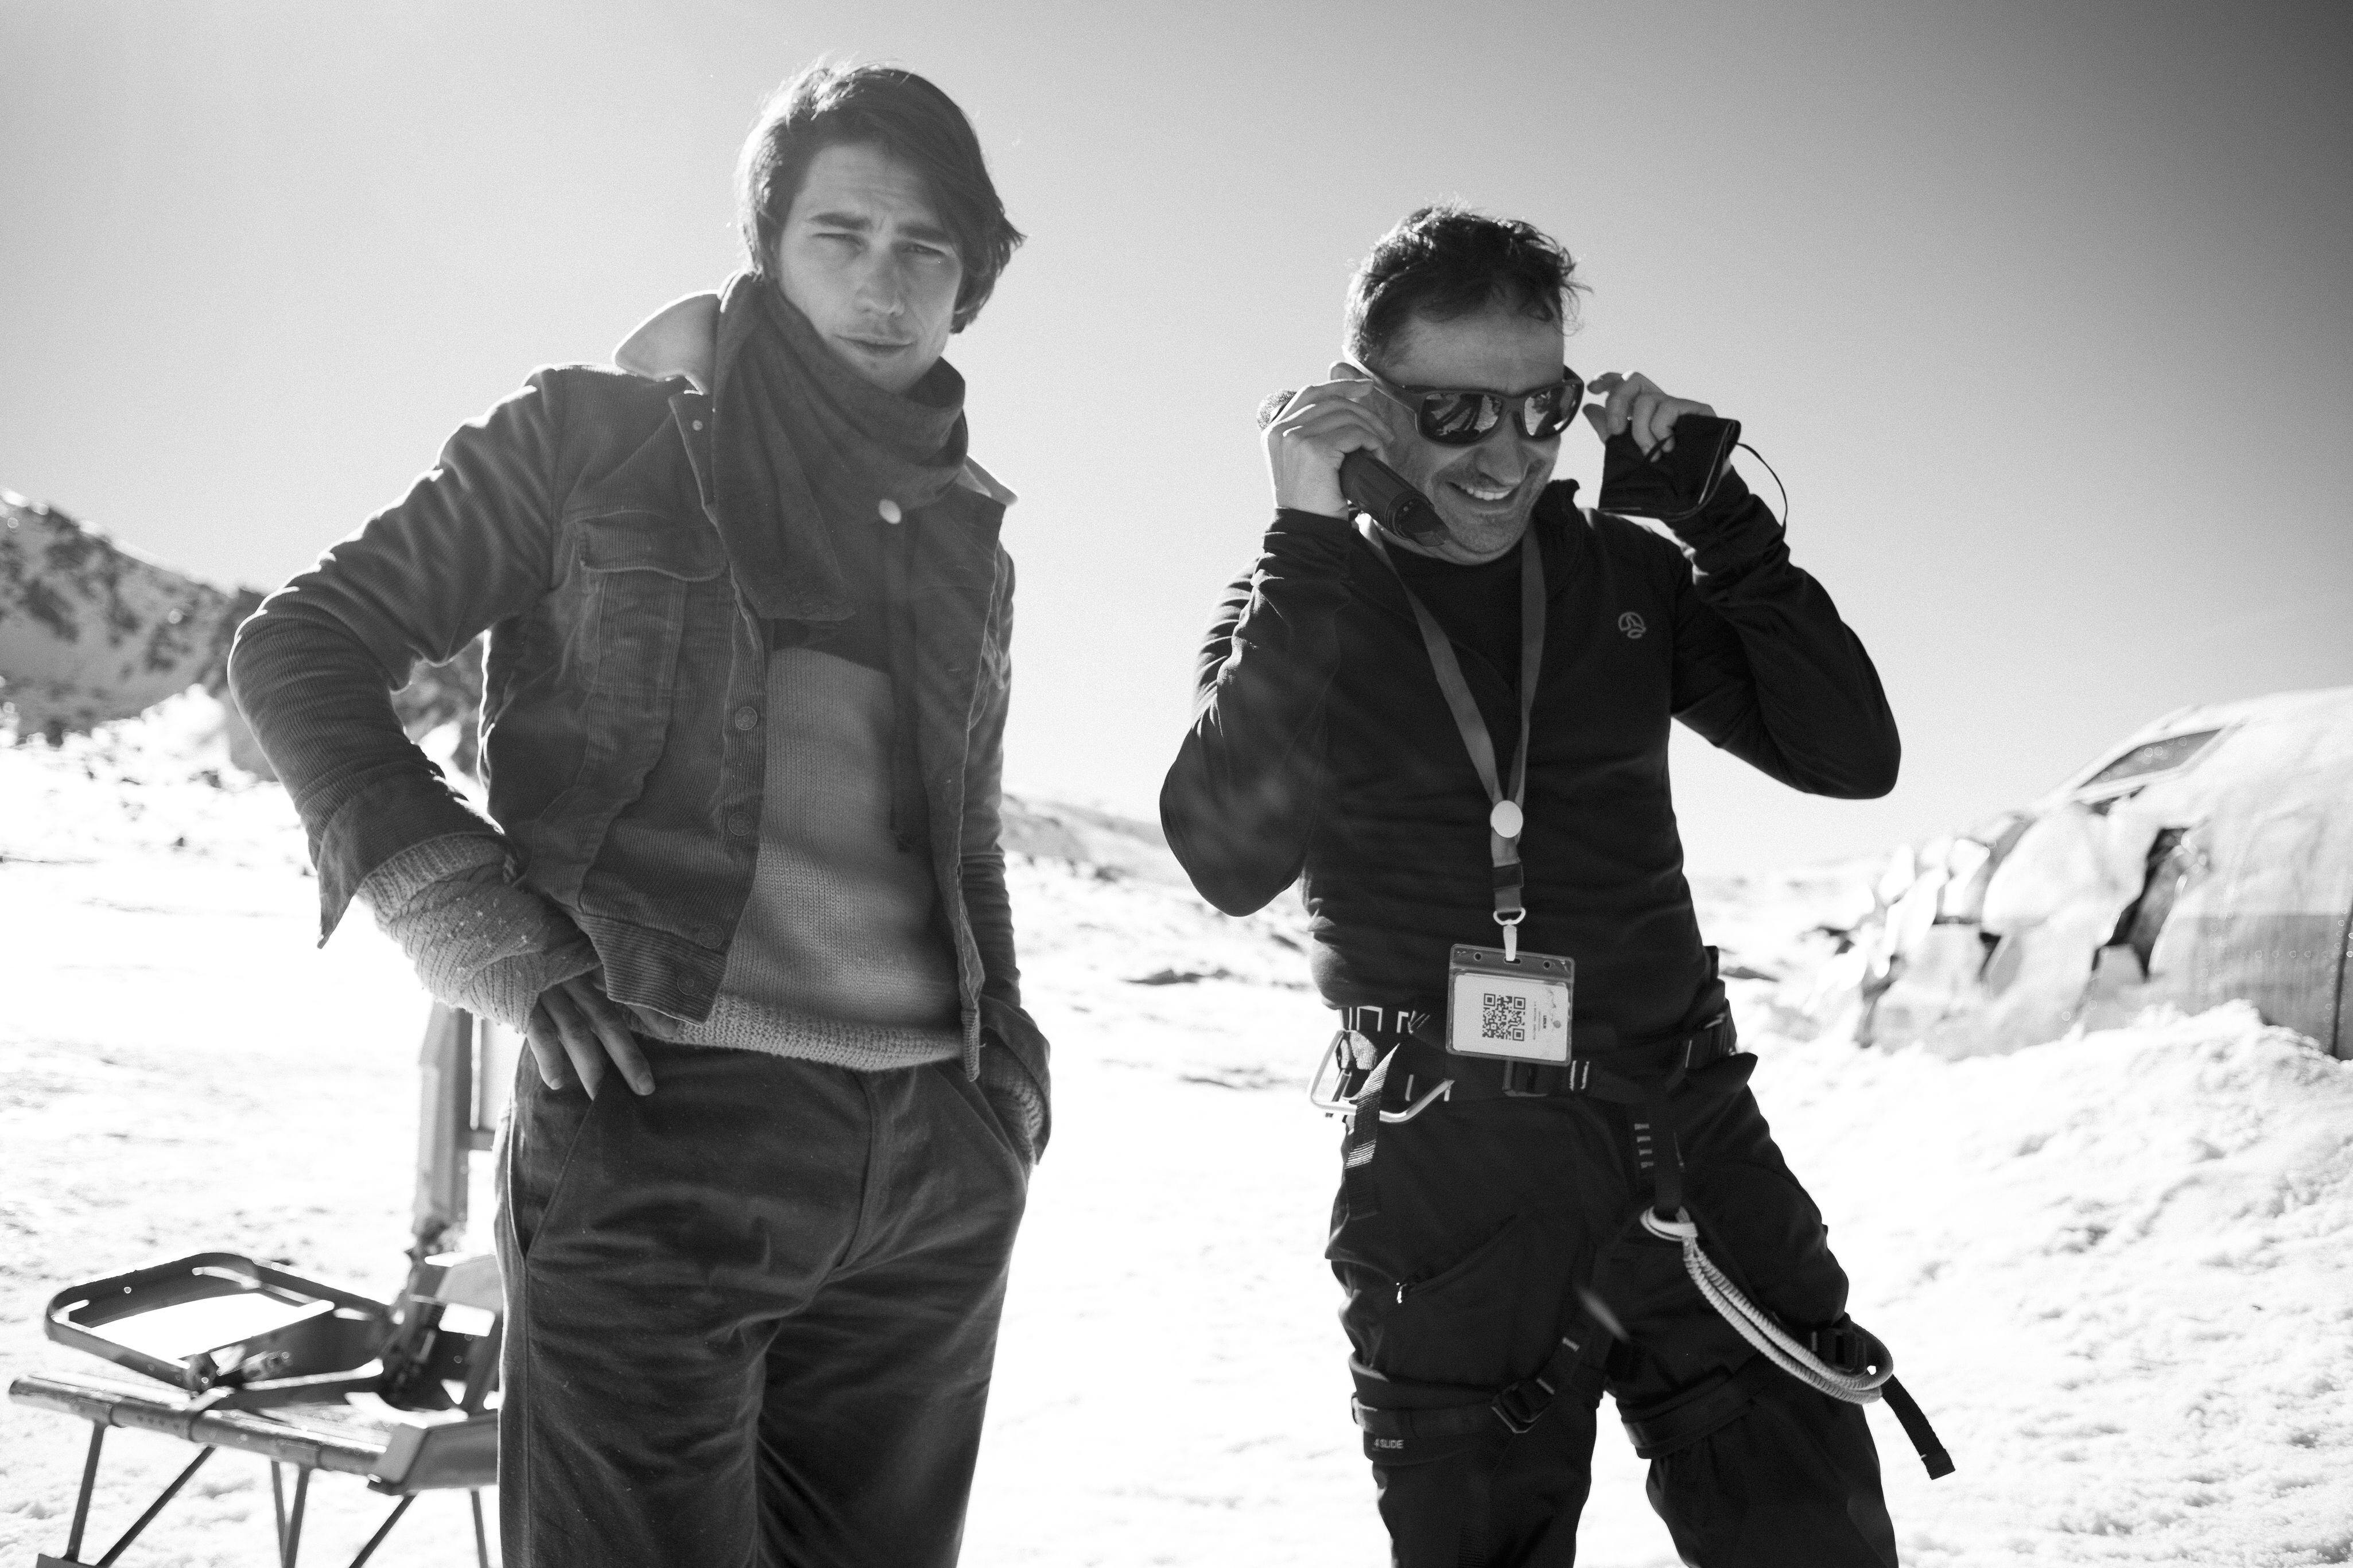 El actor Enzo Vogrincic y Juan Antonio Bayona, en el rodaje de 'La sociedad de la nieve'.